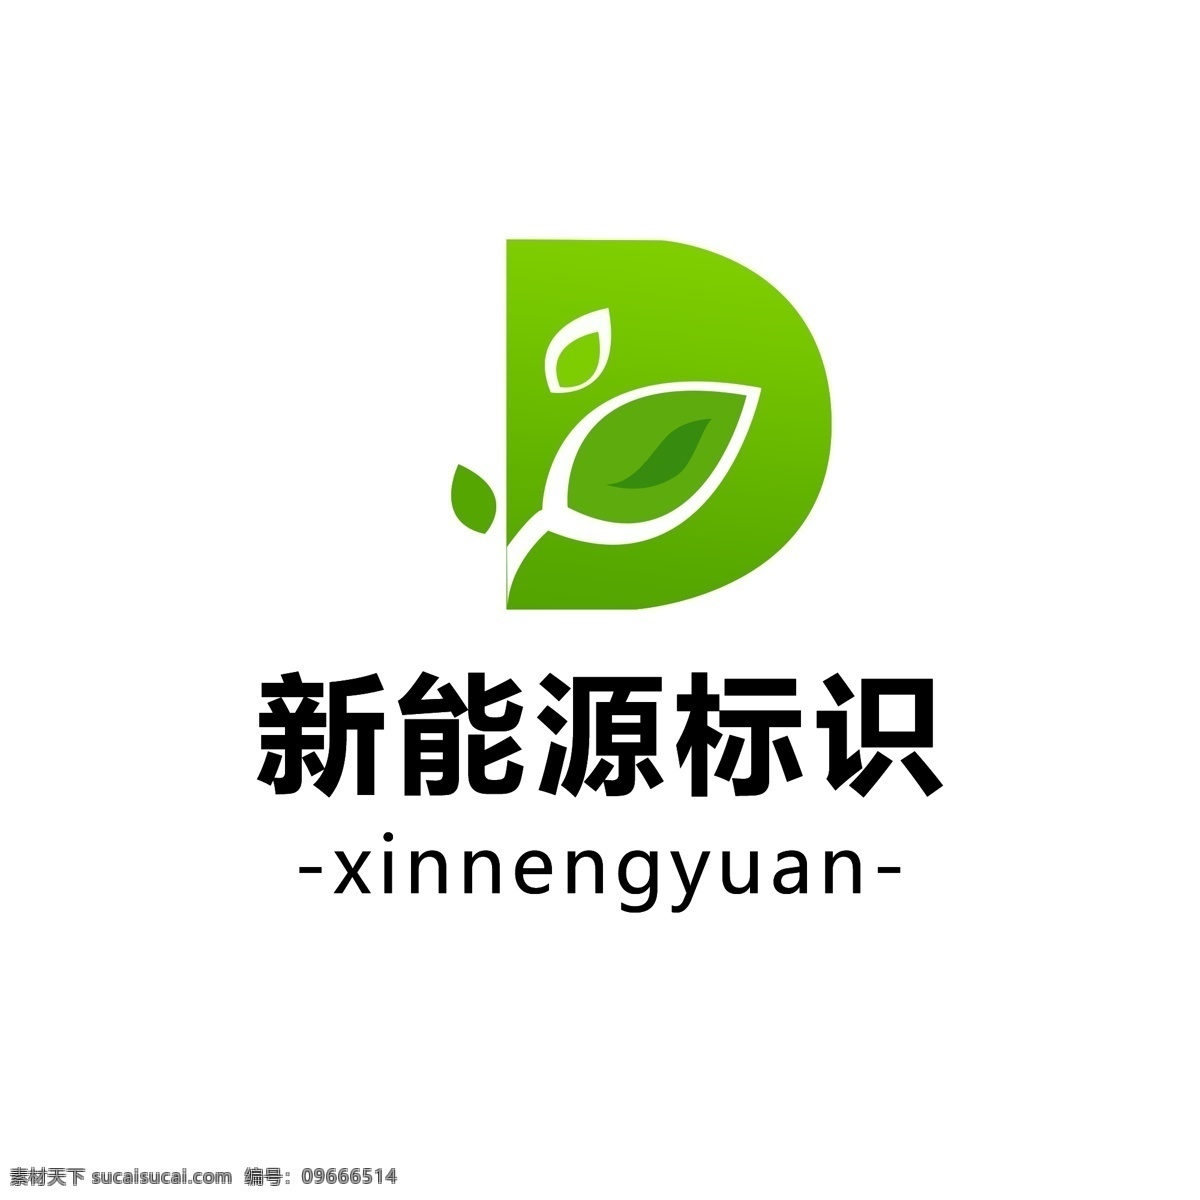 简约 新能源 绿色 标识 叶子 logo